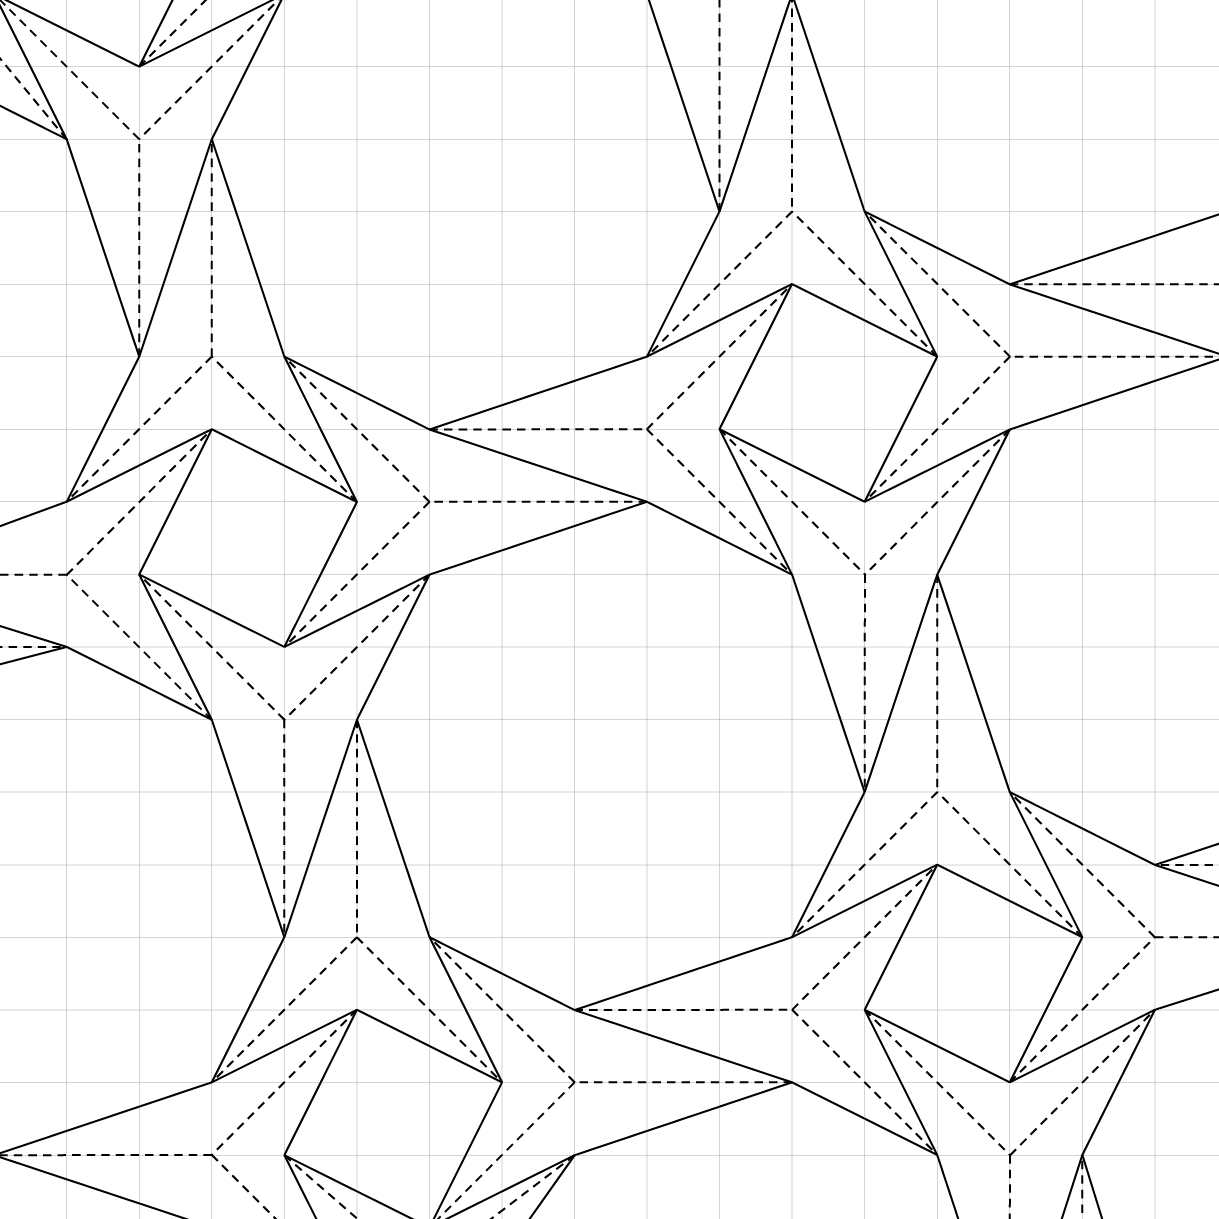 Рисунки линиями в тетради в клетку. Узоры по клеточкам в тетради сложные геометрические. Графические узоры. Узоры по клеточкам в тетради сложные геометрические ручкой. Красивые геометрические фигуры.